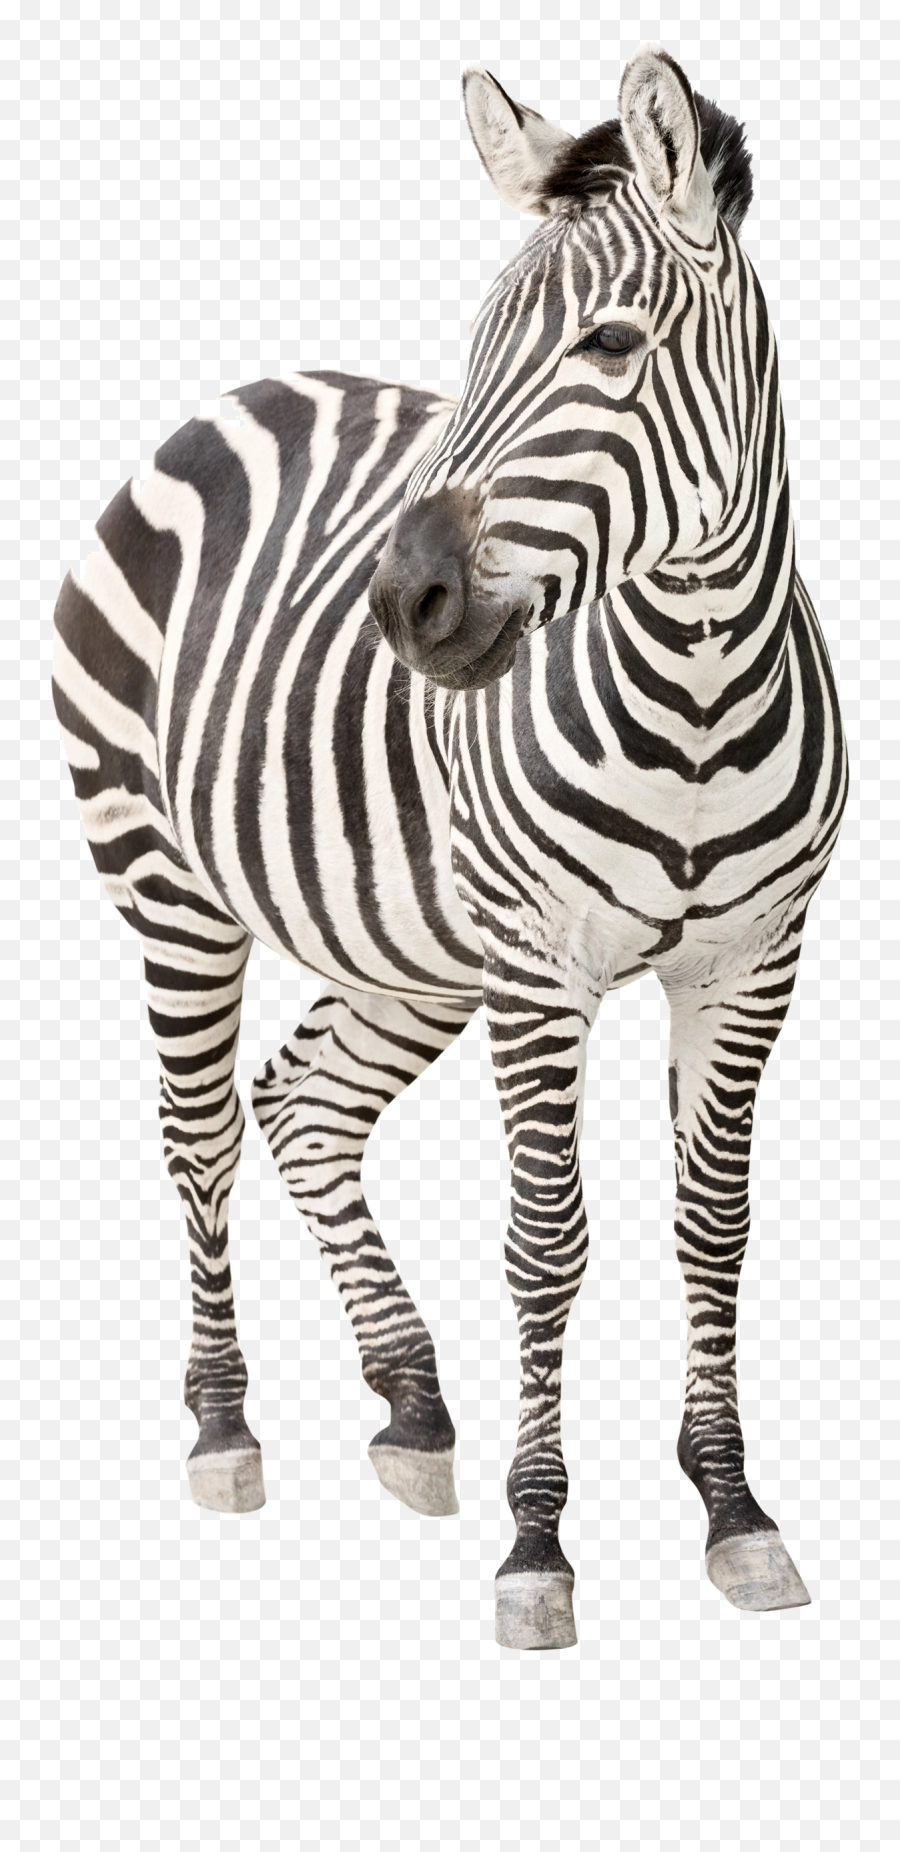 Download Free Png Zebra Transparent Image Arts - Ehlers Danlos Syndrome Symptoms,Zebra Logo Png